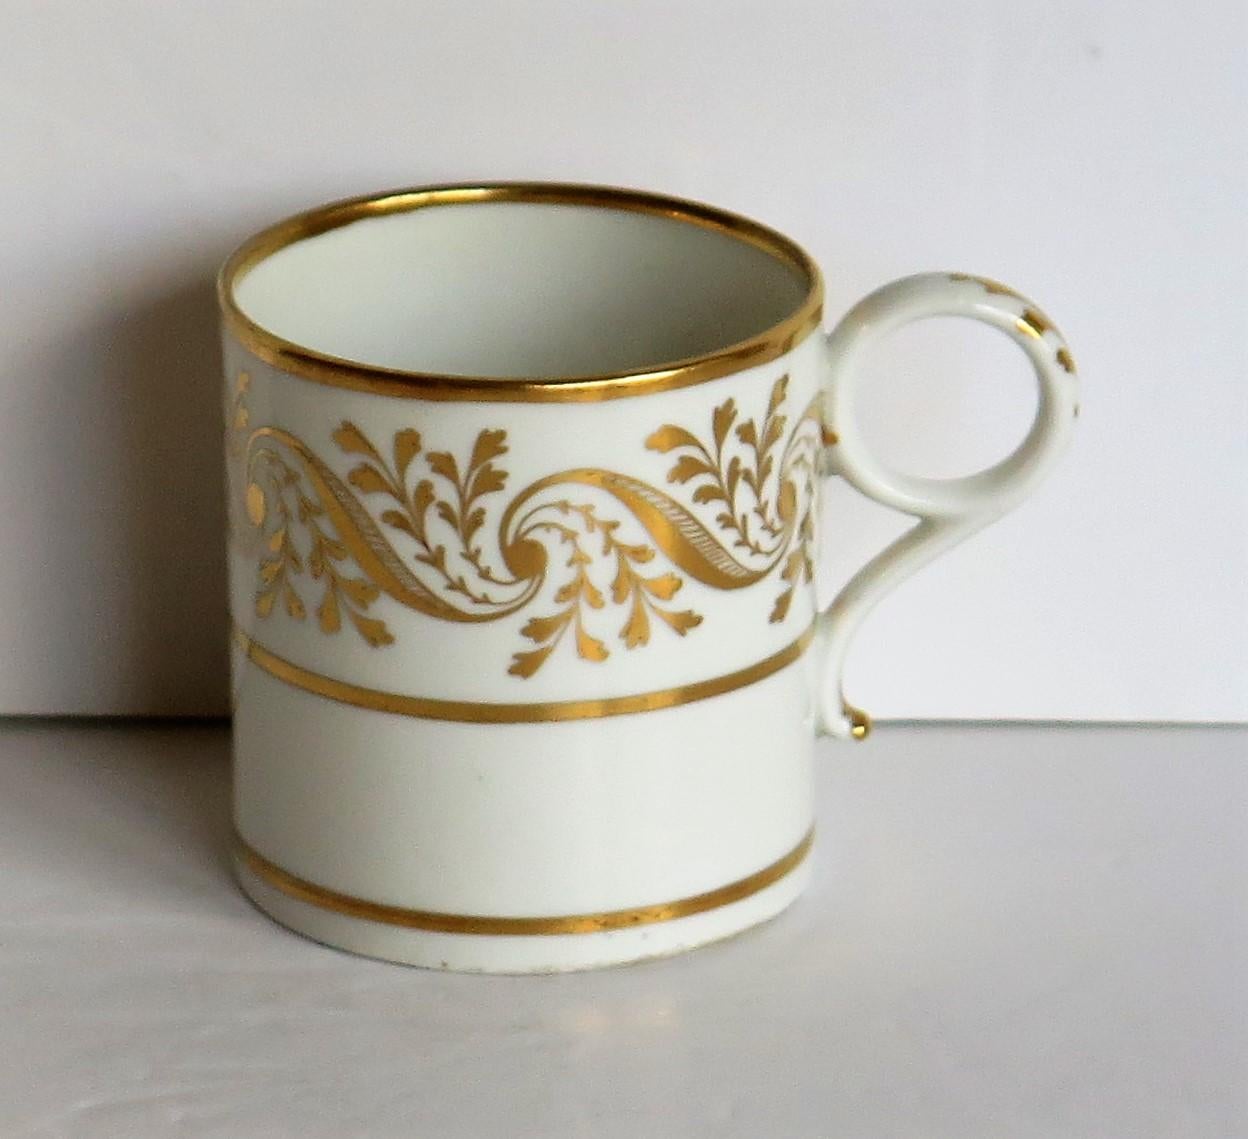 Dies ist eine sehr gute Qualität Kaffeekanne in einer Hand vergoldet Muster von Worcester während der Barr, Flight & Barr Zeitraum (BFB) von George 111. Jahren, ca. 1807-1813.

Die Kaffeekanne ist gut getopft und nominell parallel, mit einem